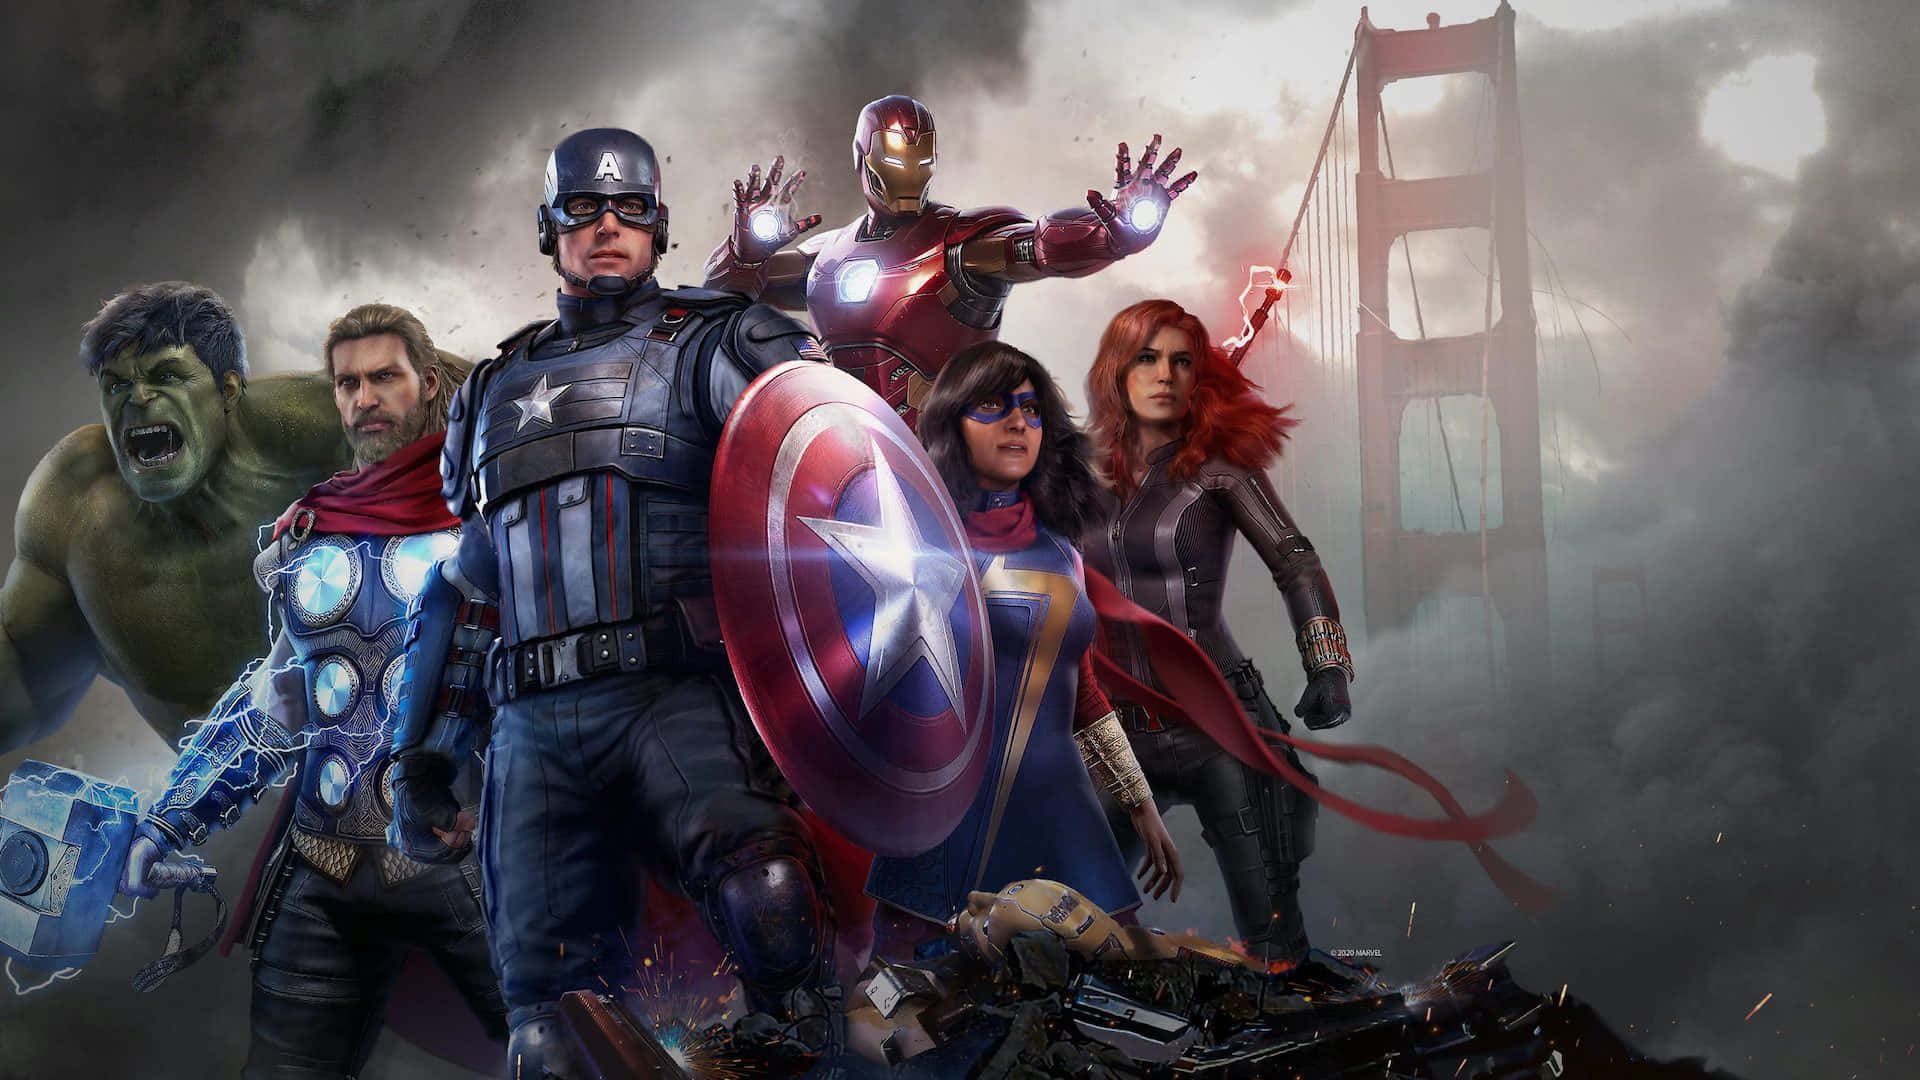 Capitánamérica E Iron Man Se Enfrentan En Una Intensa Escena De Un Videojuego De Superhéroes. Fondo de pantalla